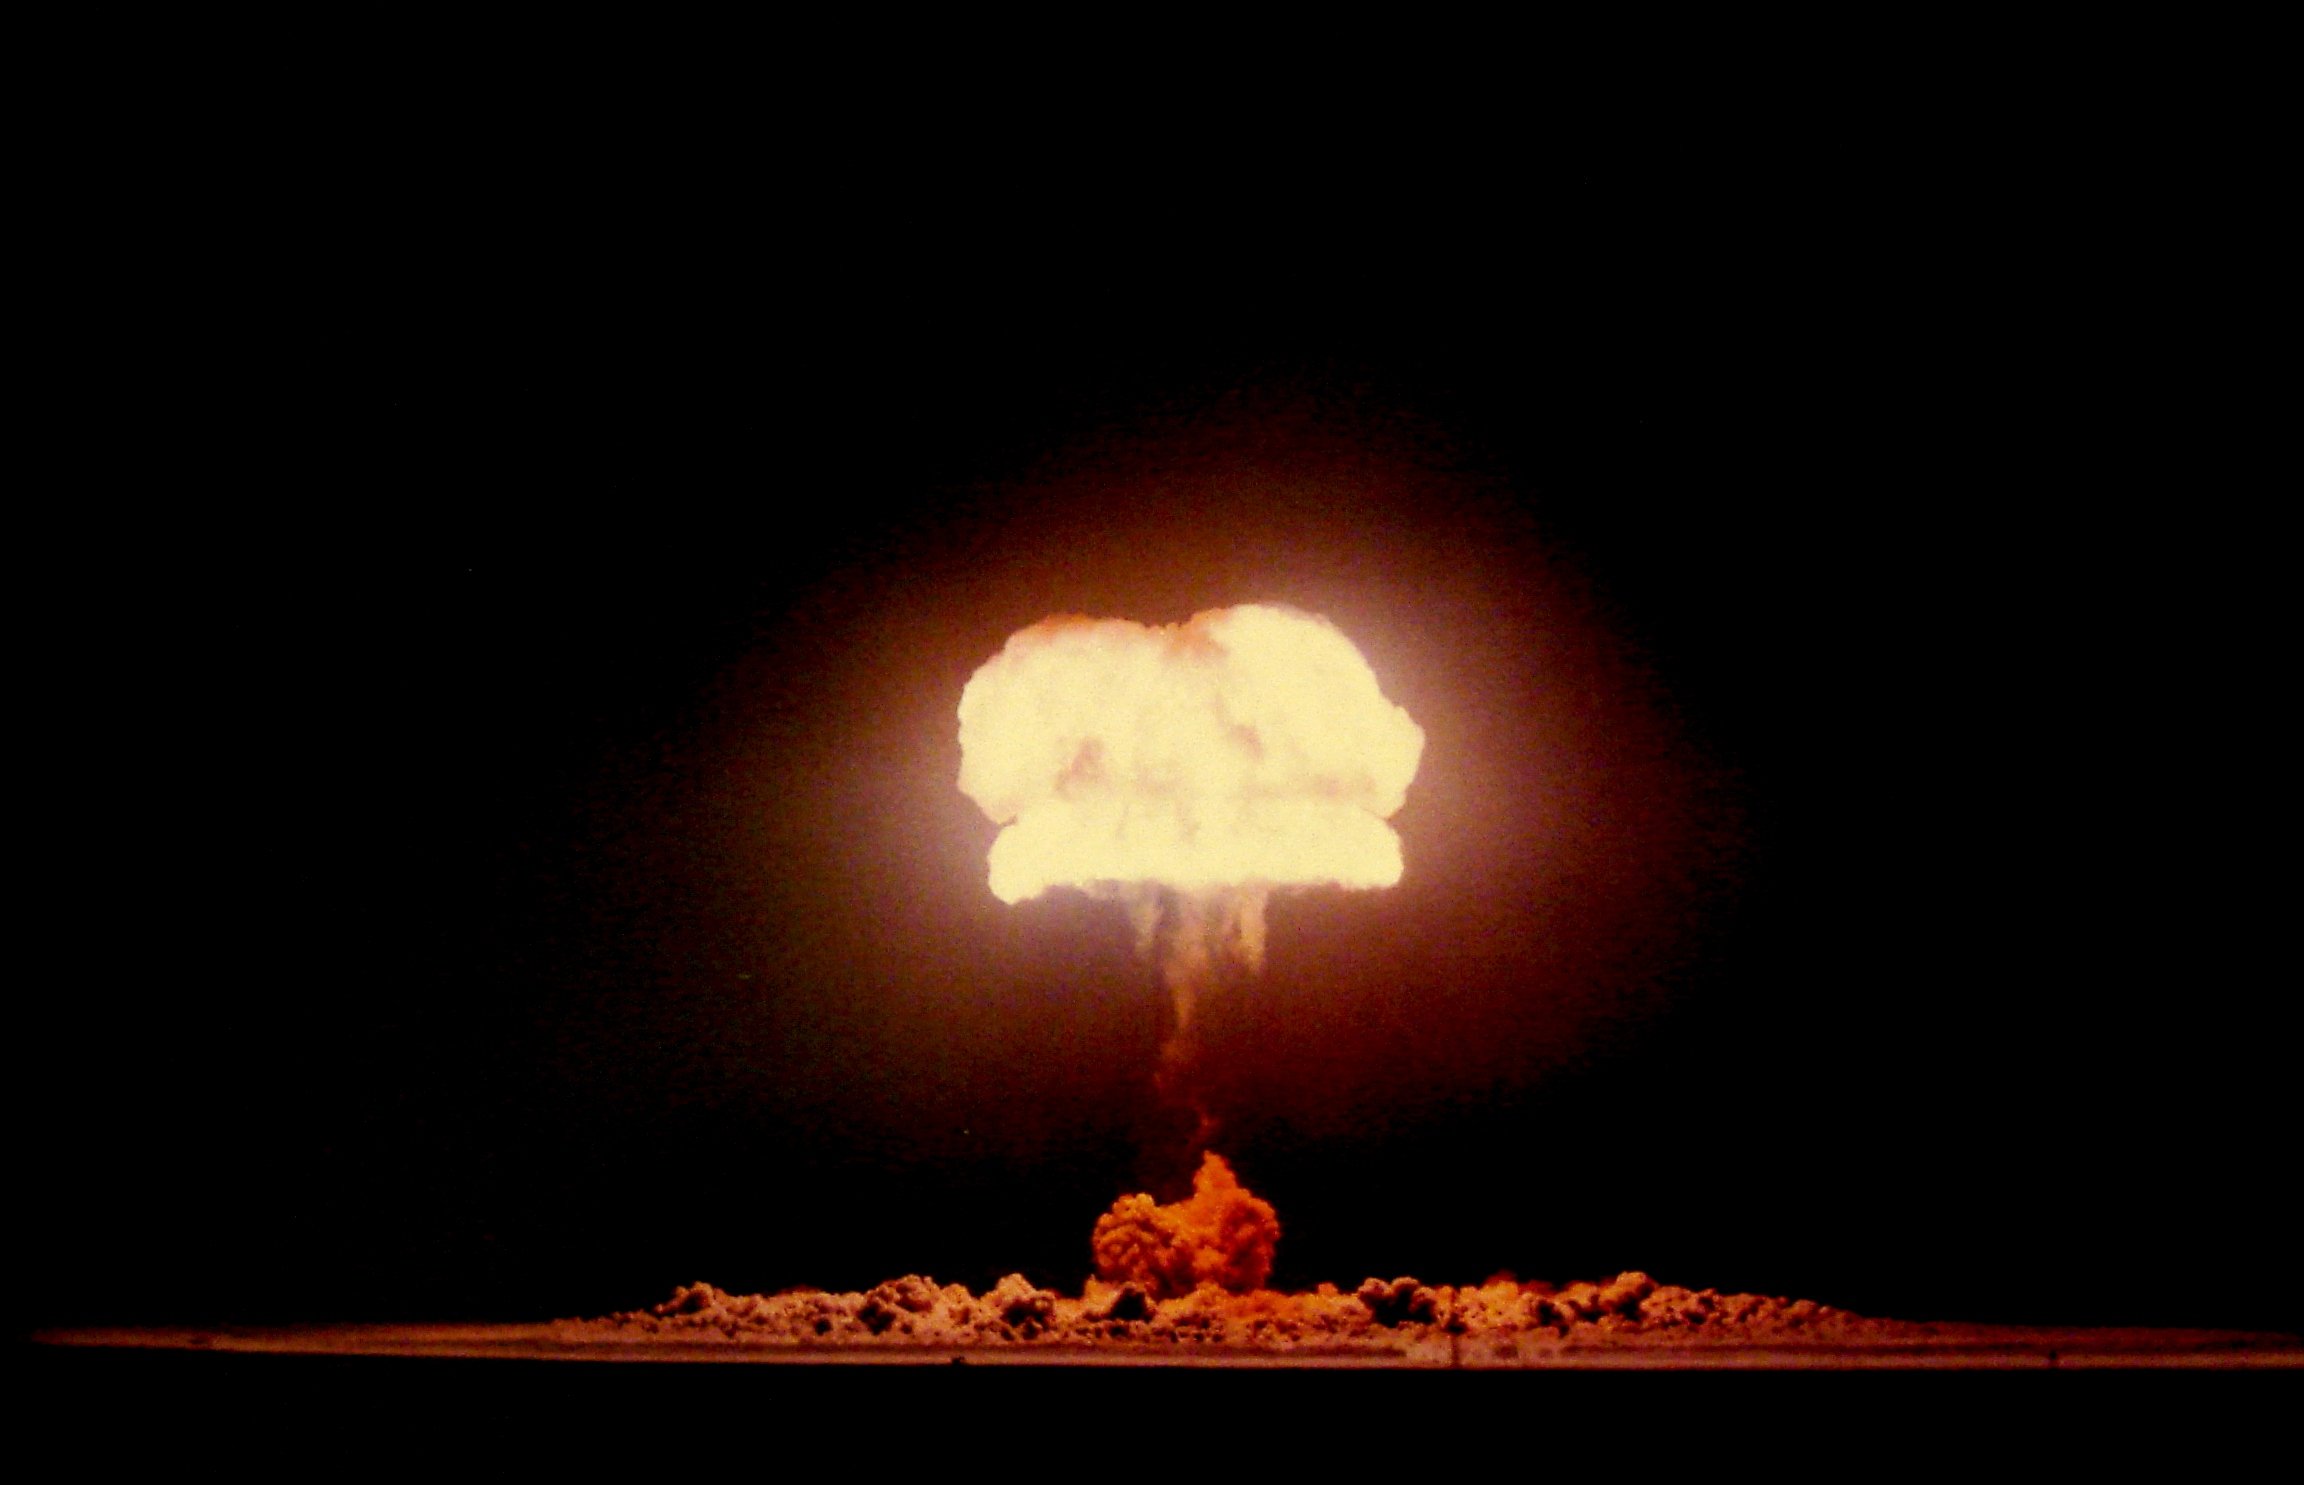 Сайт ядерного взрыва. Ядерное оружие световое излучение. Световое излучение ядерного взрыва. Ядерный взрыв 40мт. Высотный взрыв ядерного оружия.